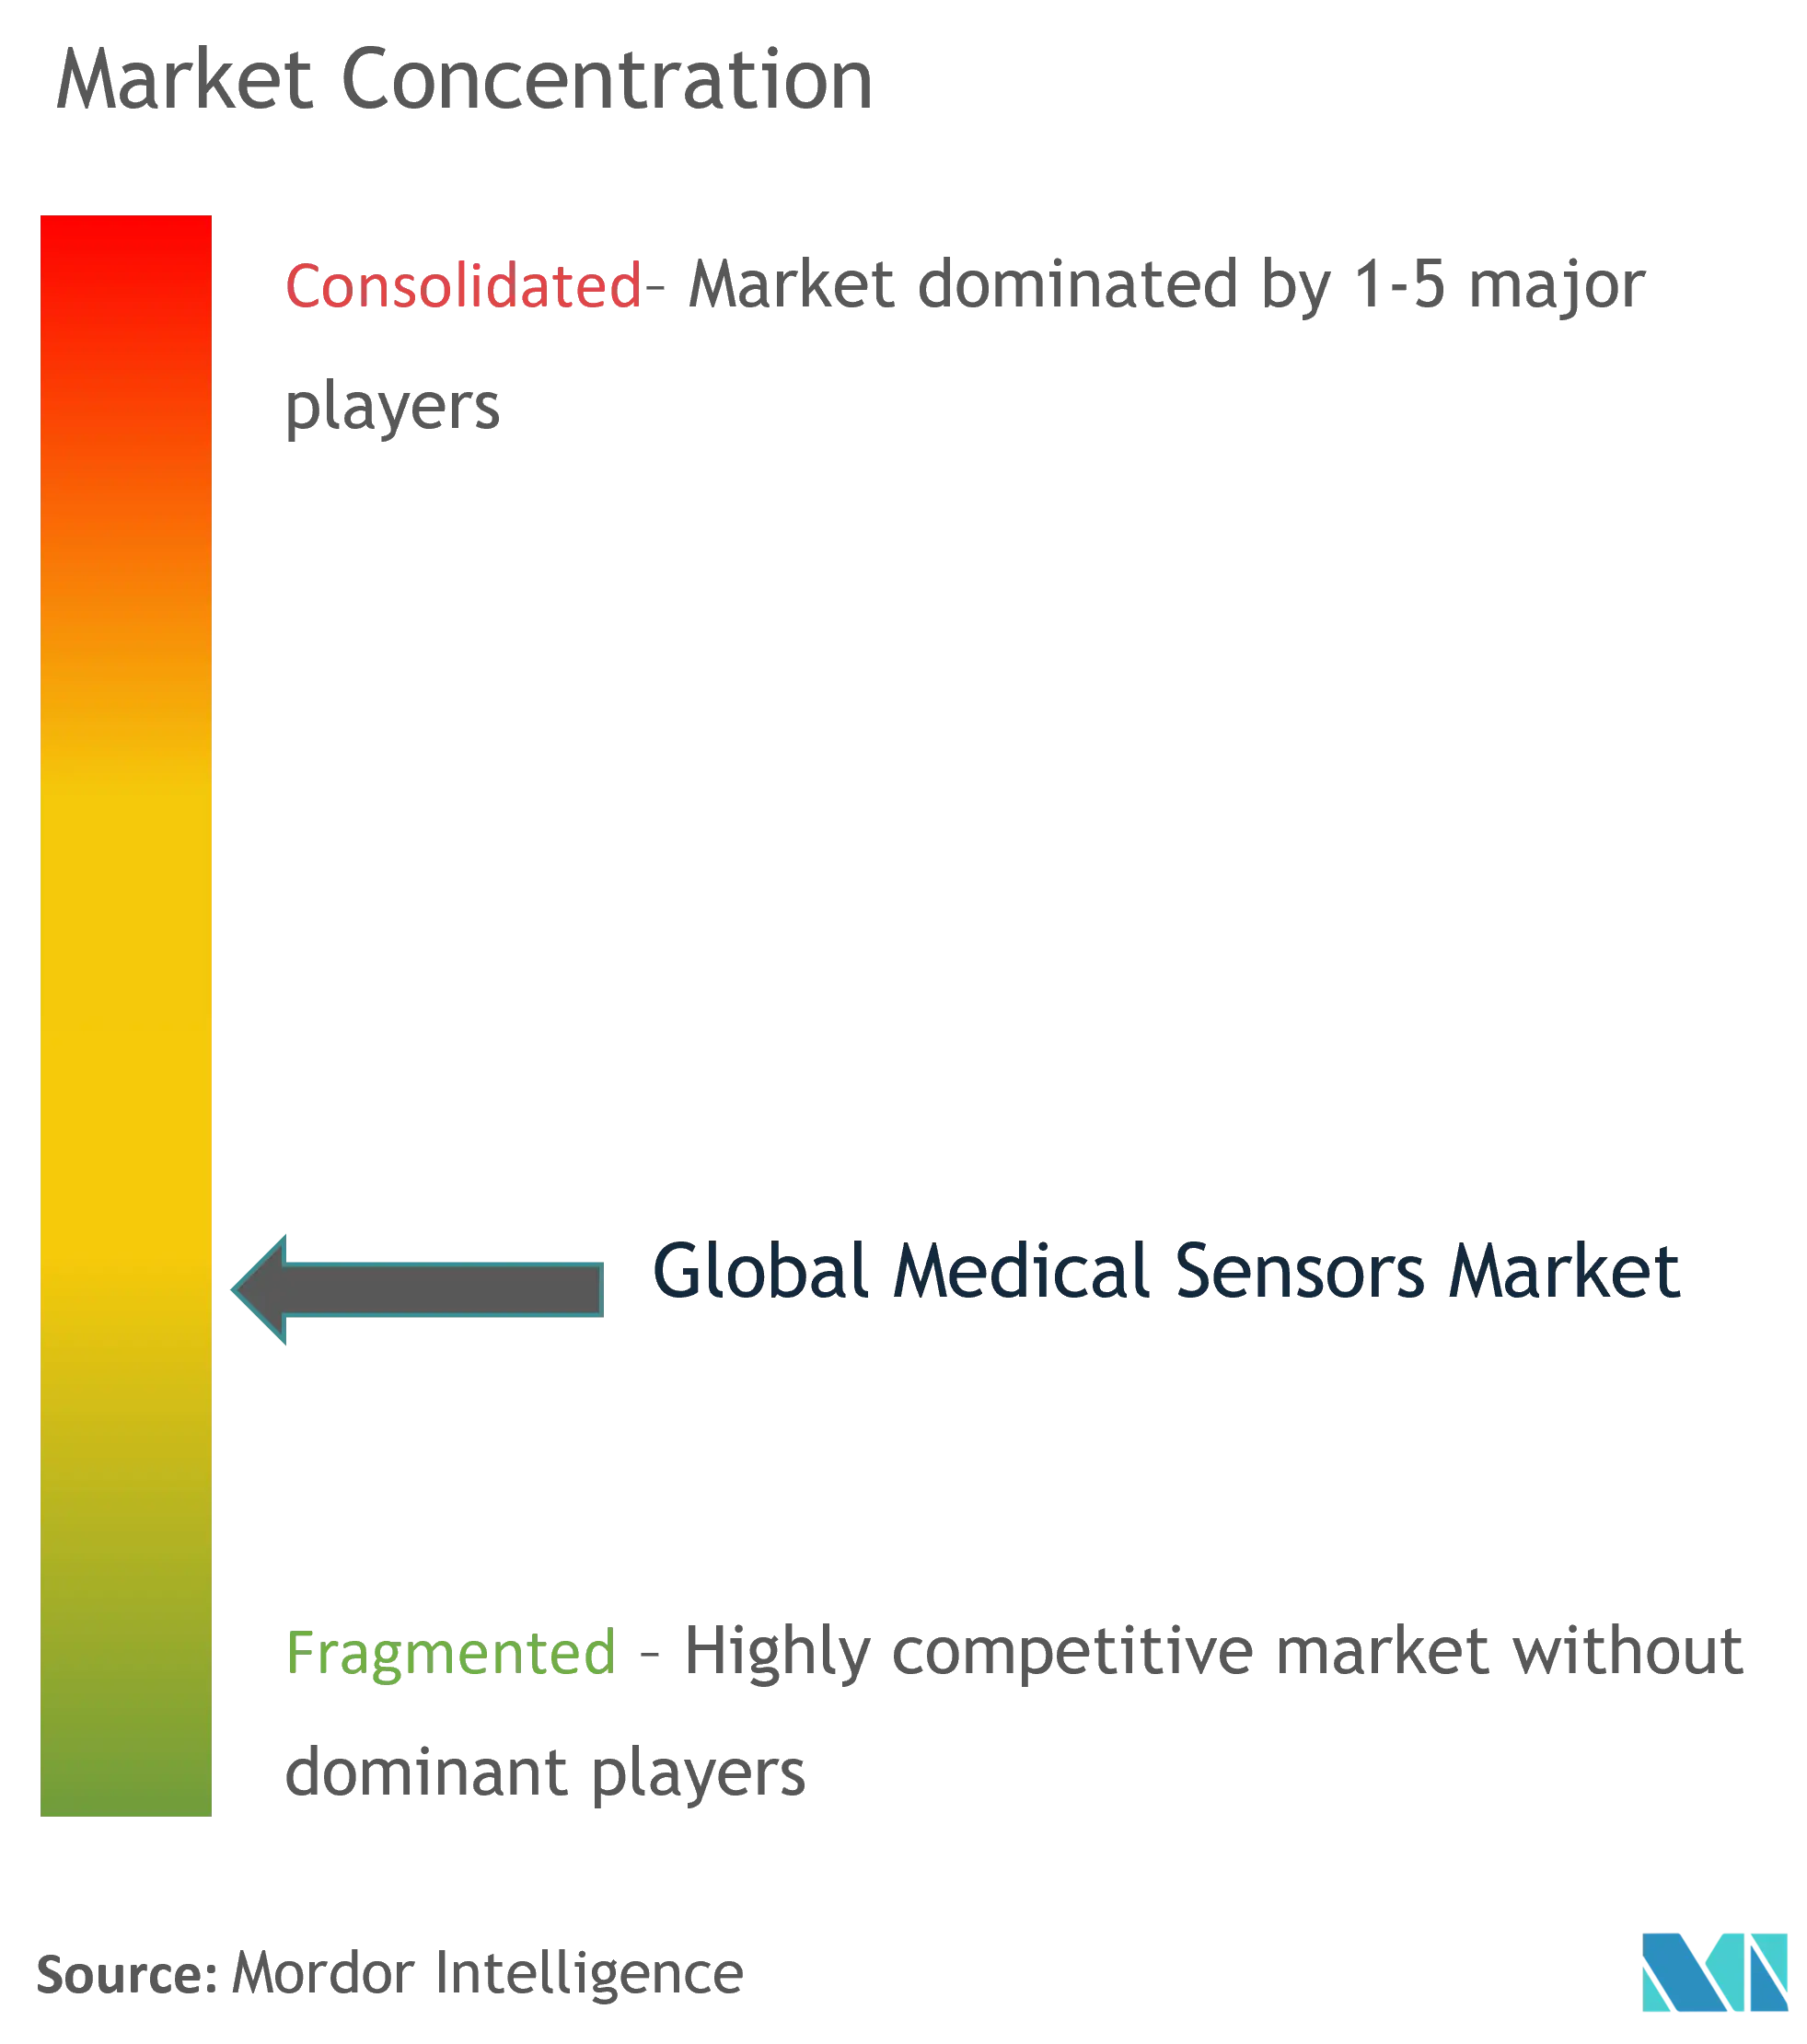 Medical Sensor Market - Market Concentration .png